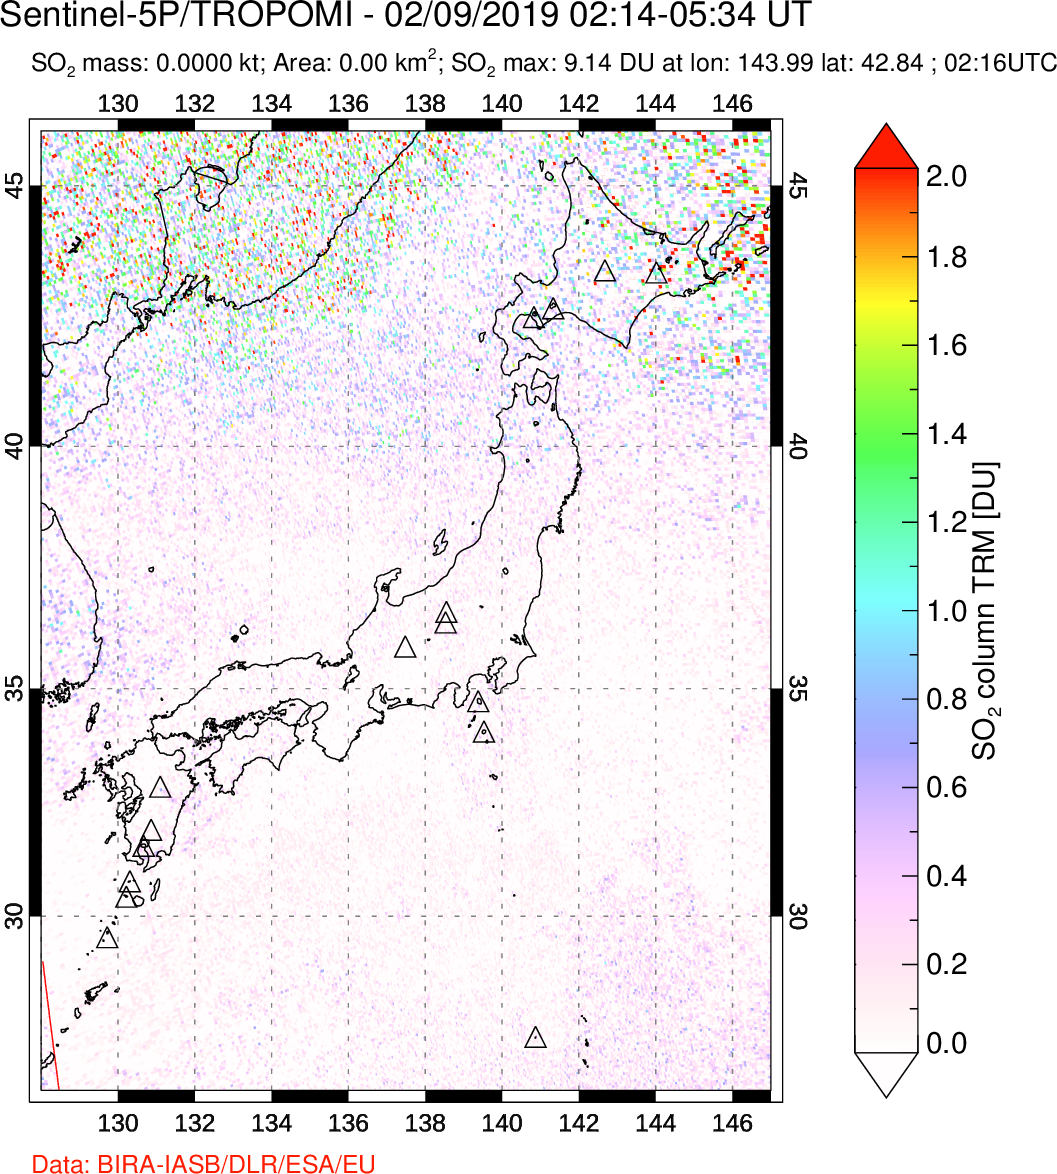 A sulfur dioxide image over Japan on Feb 09, 2019.